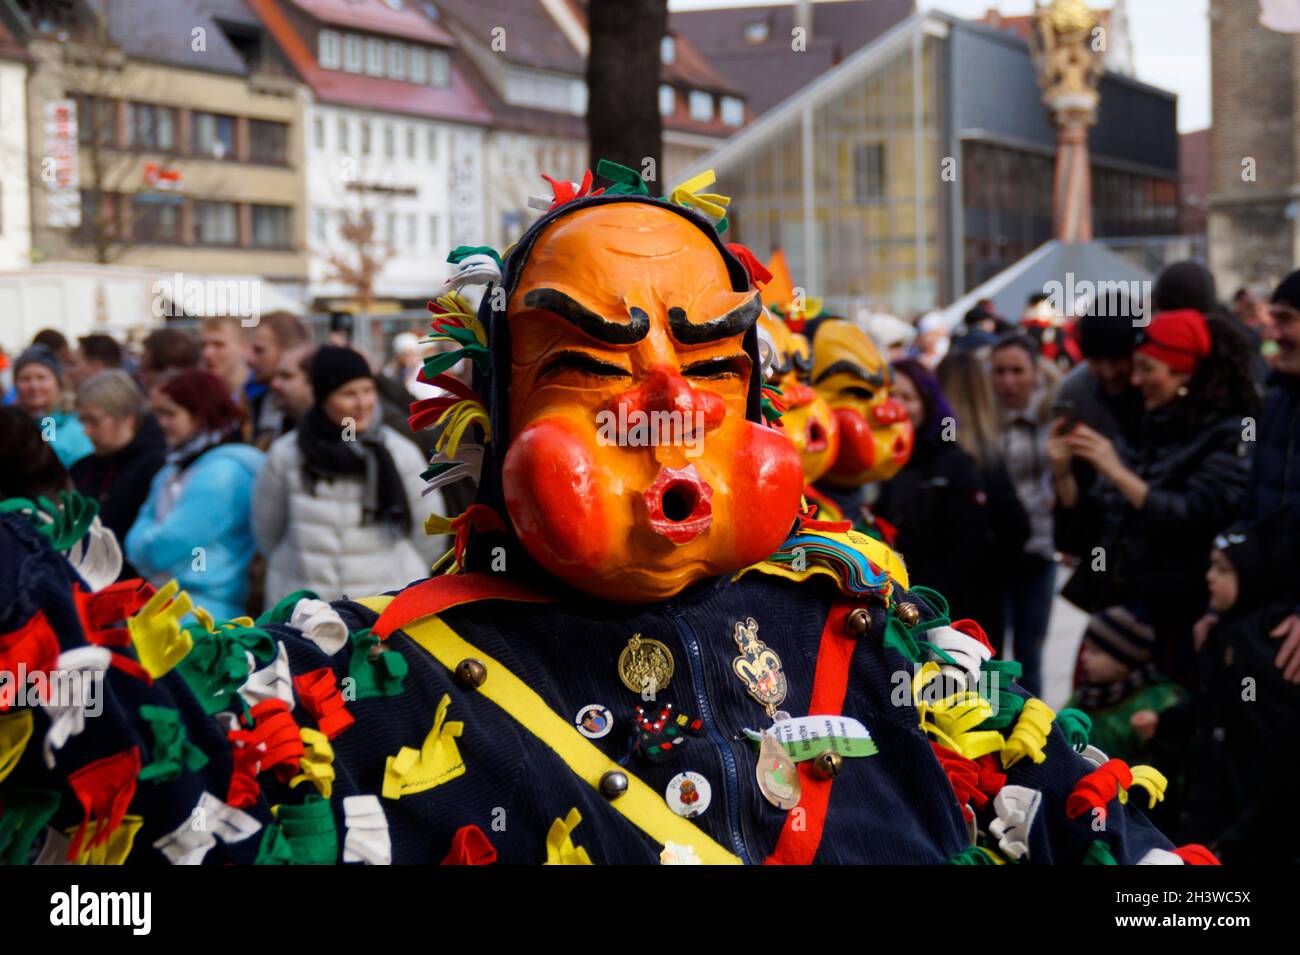 Des gens vêtus de vêtements et de masques amusants célébrant le traditionnel carnaval allemand de Shrovetide appelé Fasching ou Narrensprung à Ulm, en Allemagne Banque D'Images